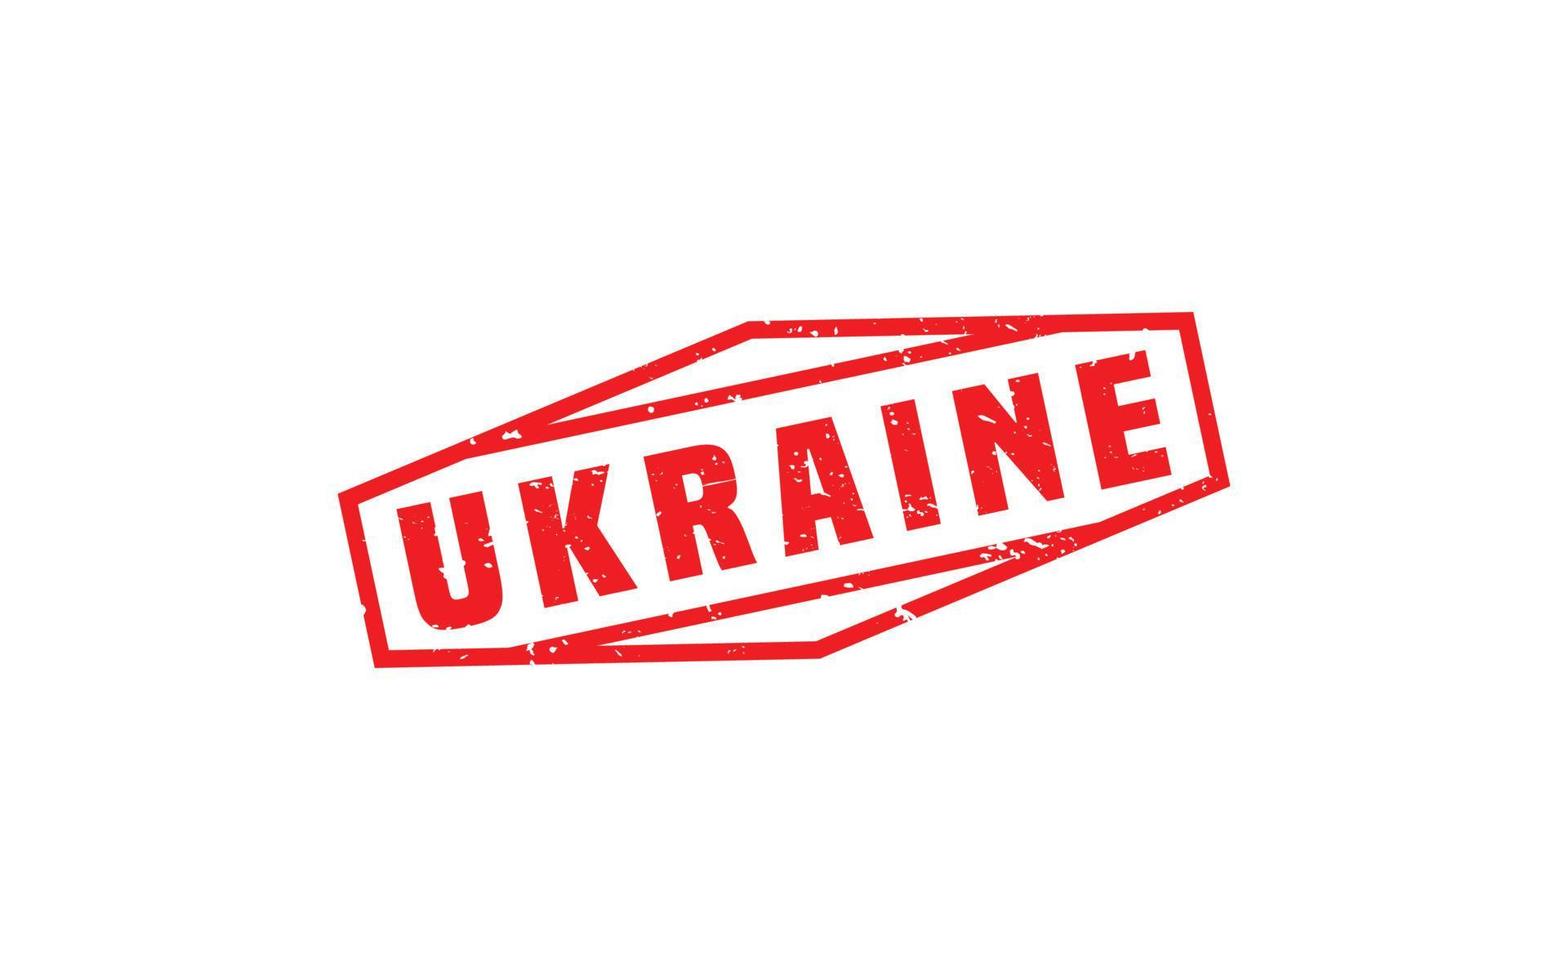 Ucraina gomma da cancellare francobollo con grunge stile su bianca sfondo vettore